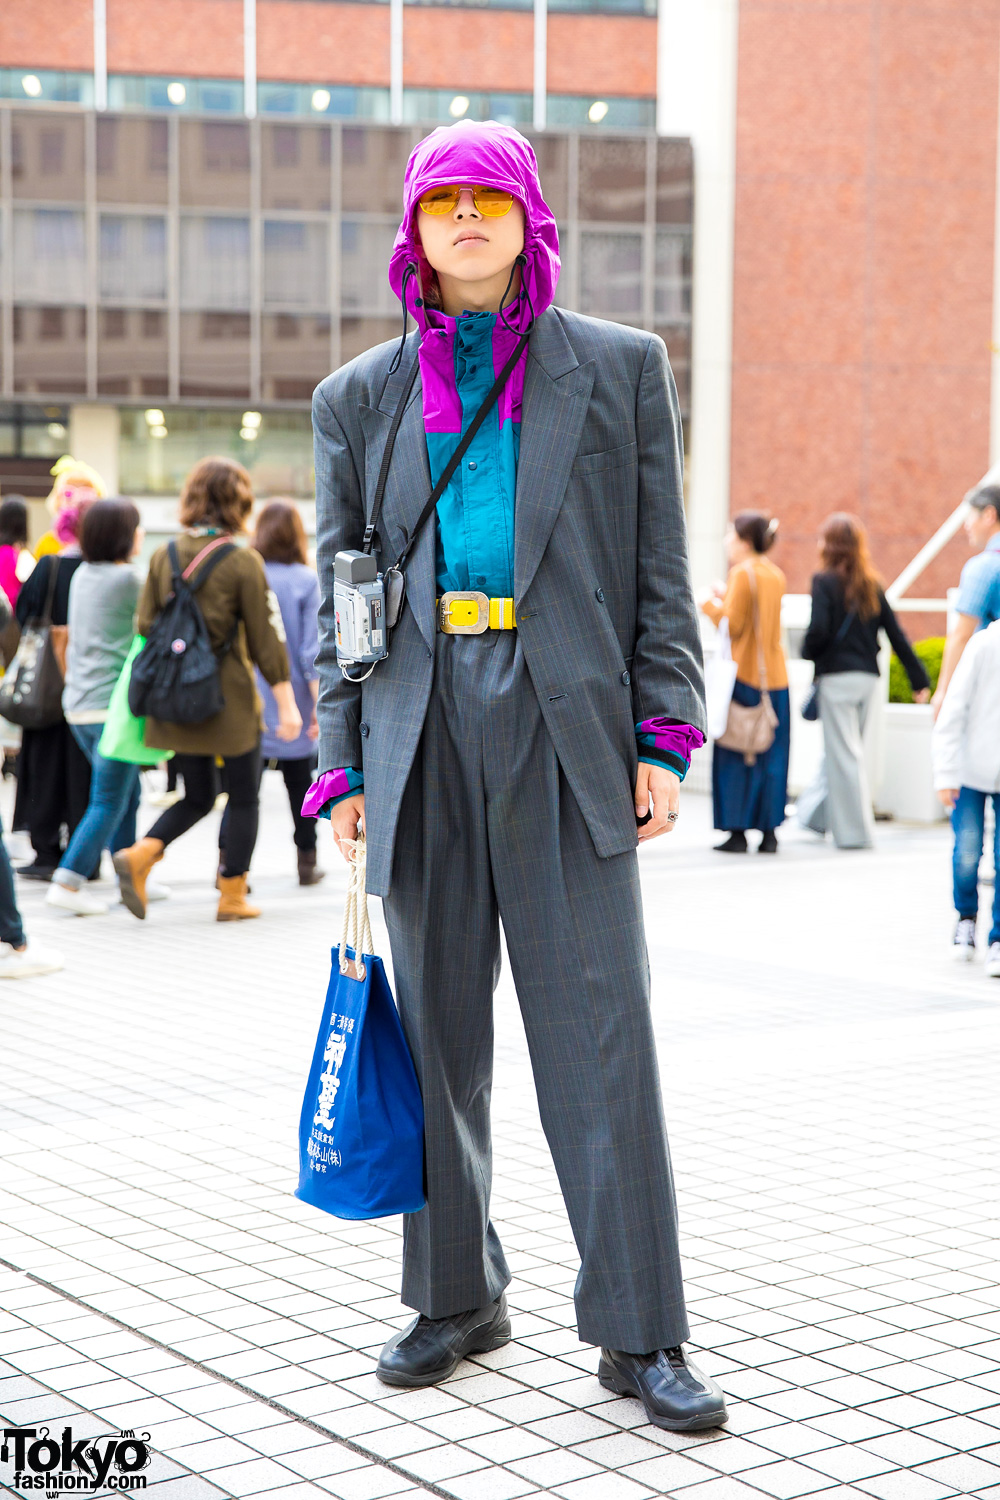 Japanese Streetwear Style w/ Hoodie Under Vintage Suit, Yellow Belt & Sneakers